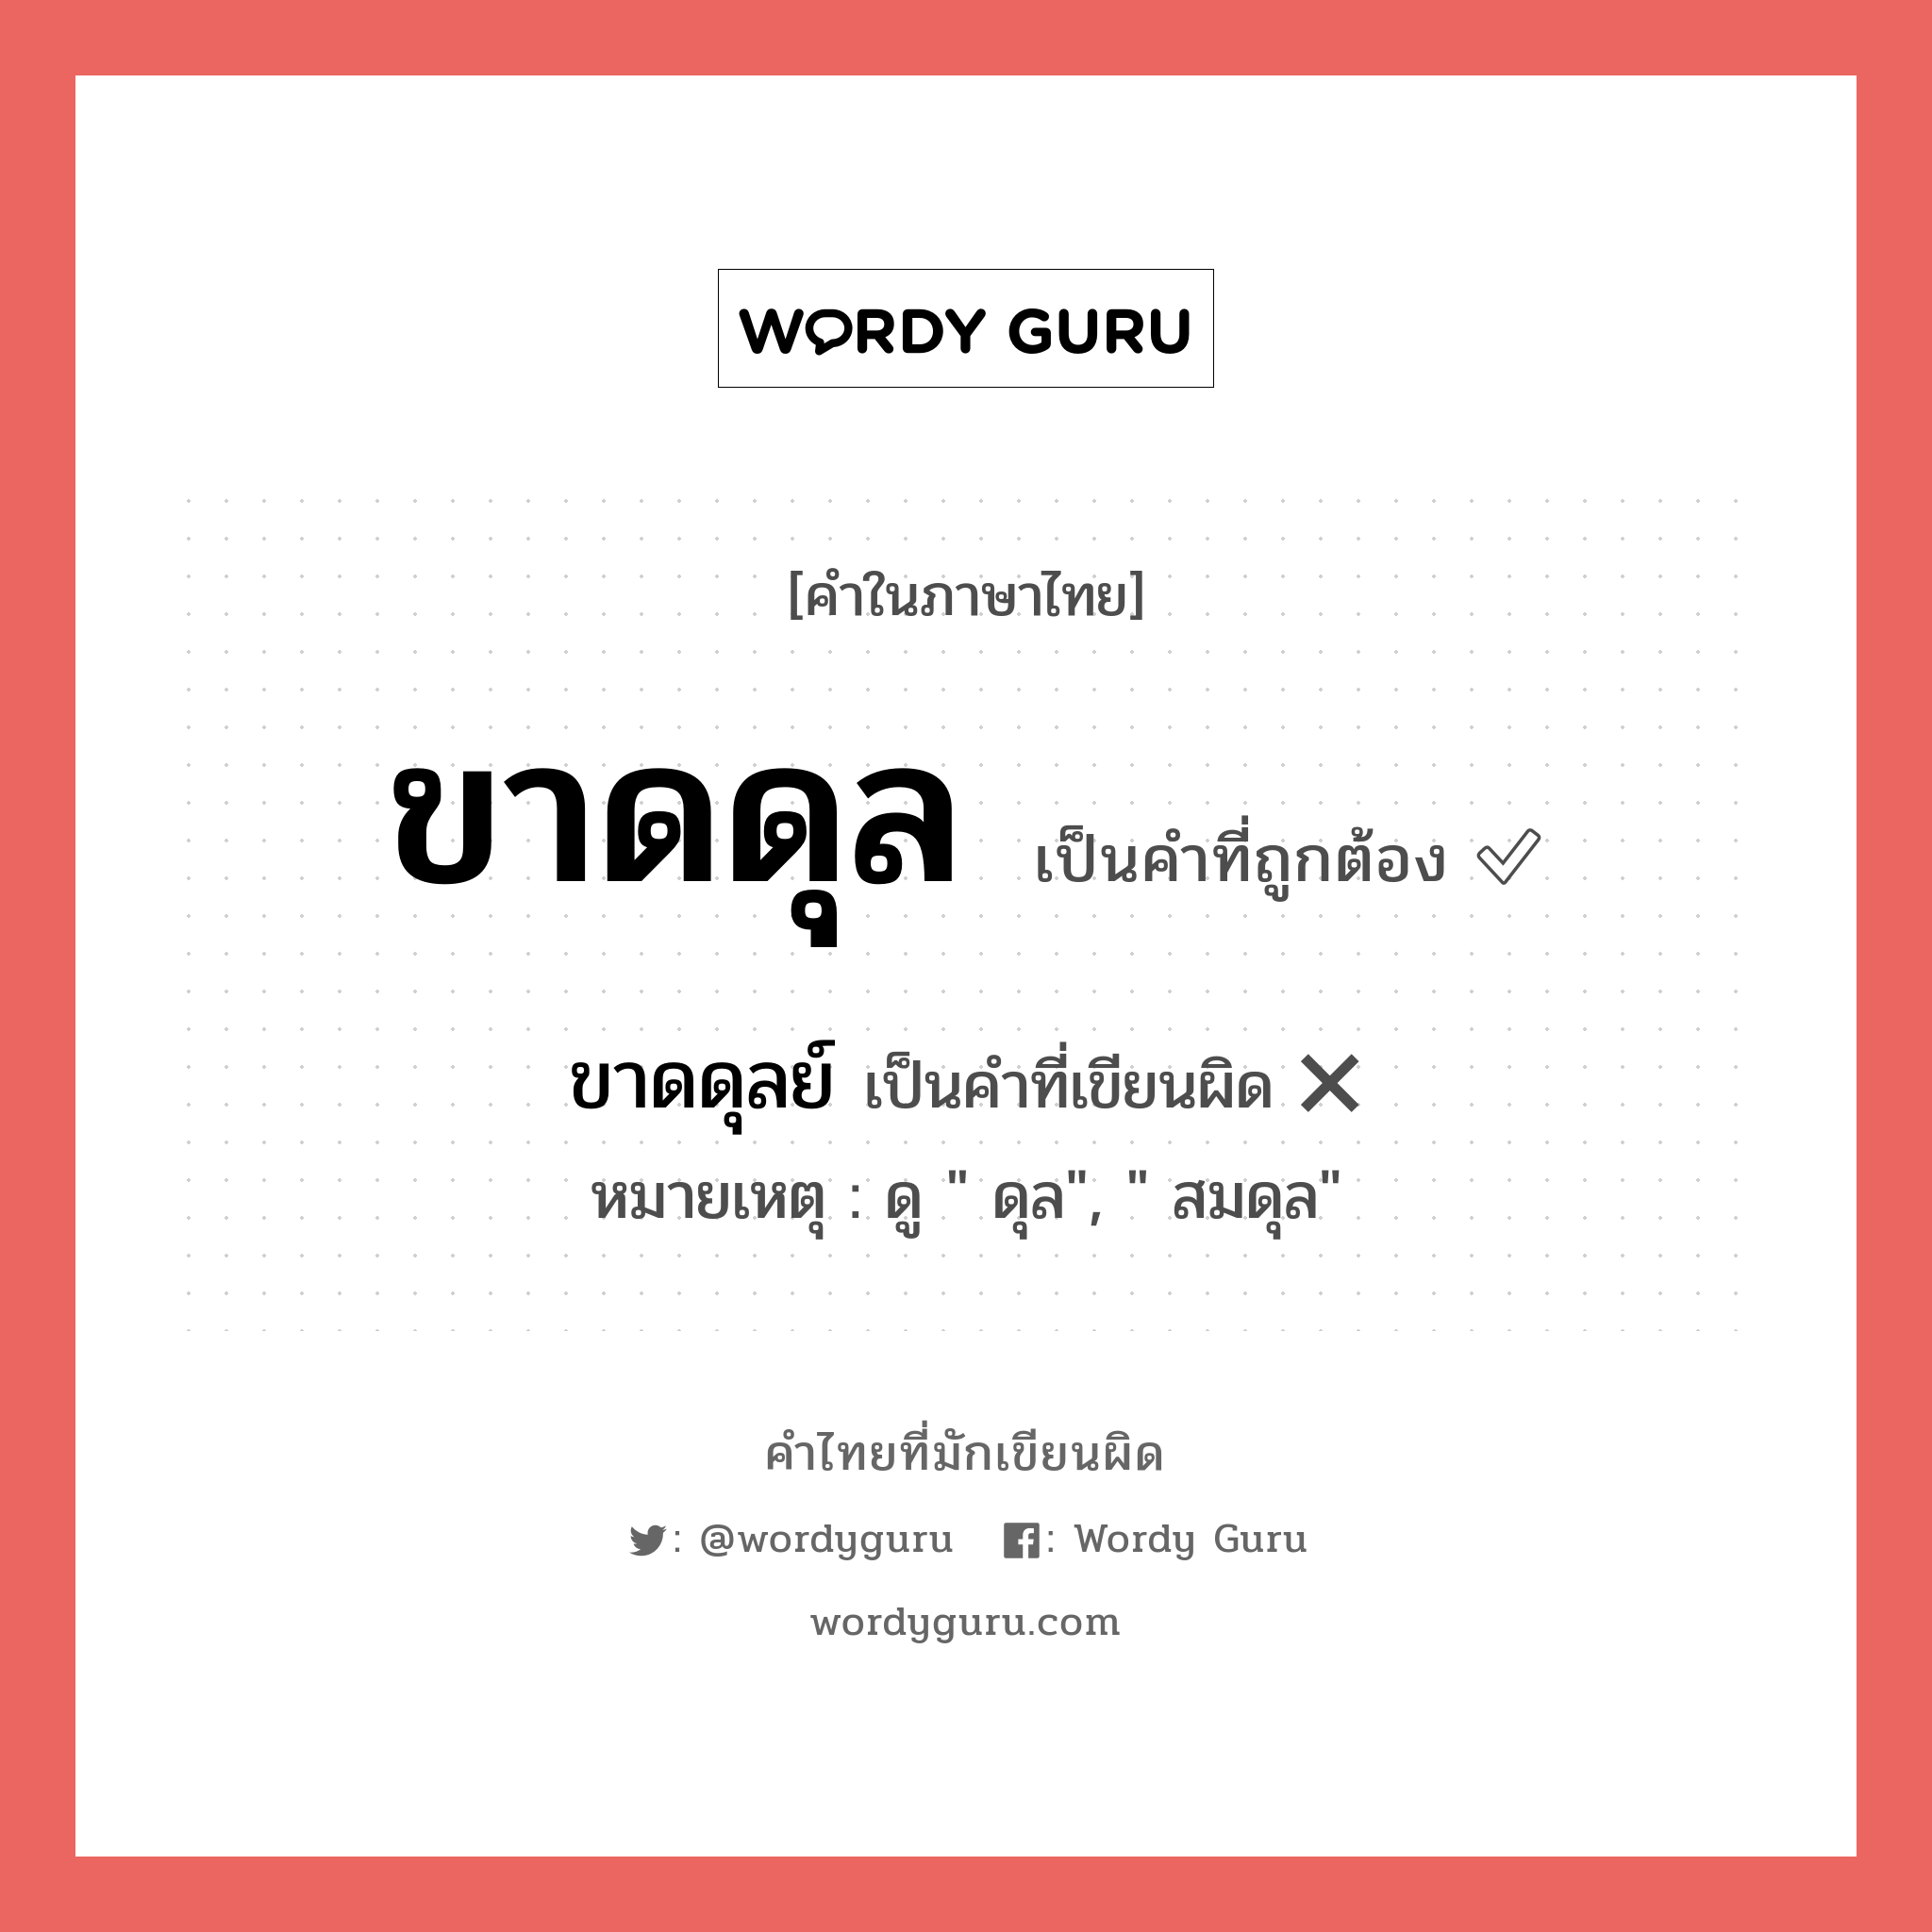 ขาดดุล หรือ ขาดดุลย์ เขียนยังไง? คำไหนเขียนถูก?, คำในภาษาไทยที่มักเขียนผิด ขาดดุล คำที่ผิด ❌ ขาดดุลย์ หมายเหตุ ดู " ดุล", " สมดุล"